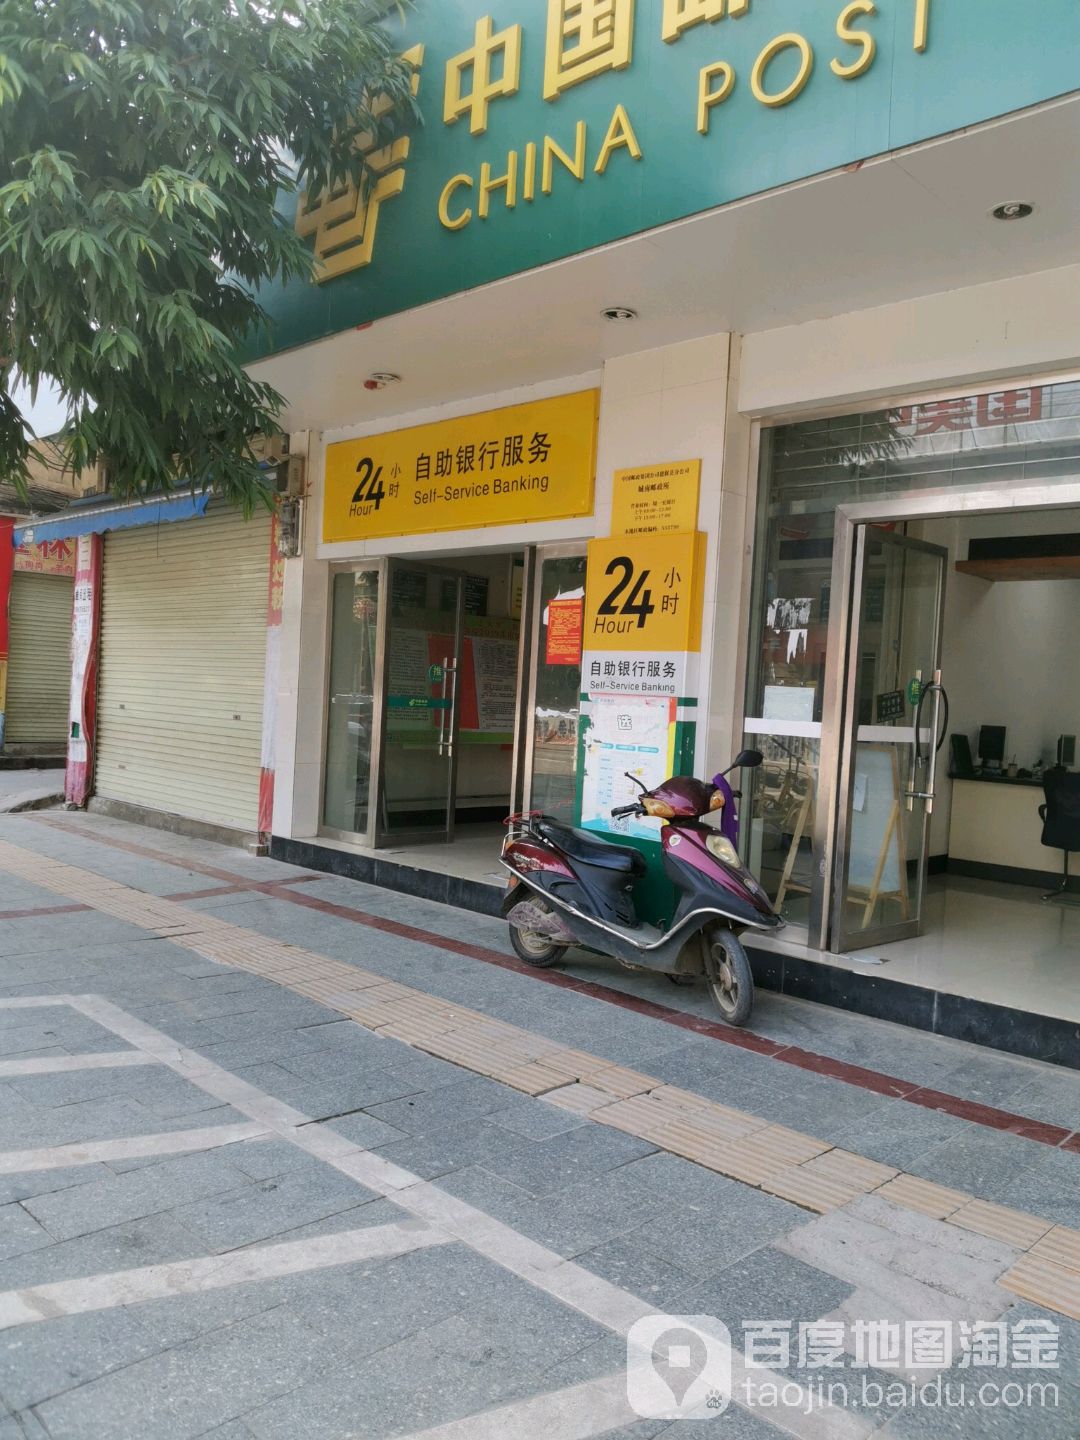 中国邮政24小时自助银行服务(德盛路店)